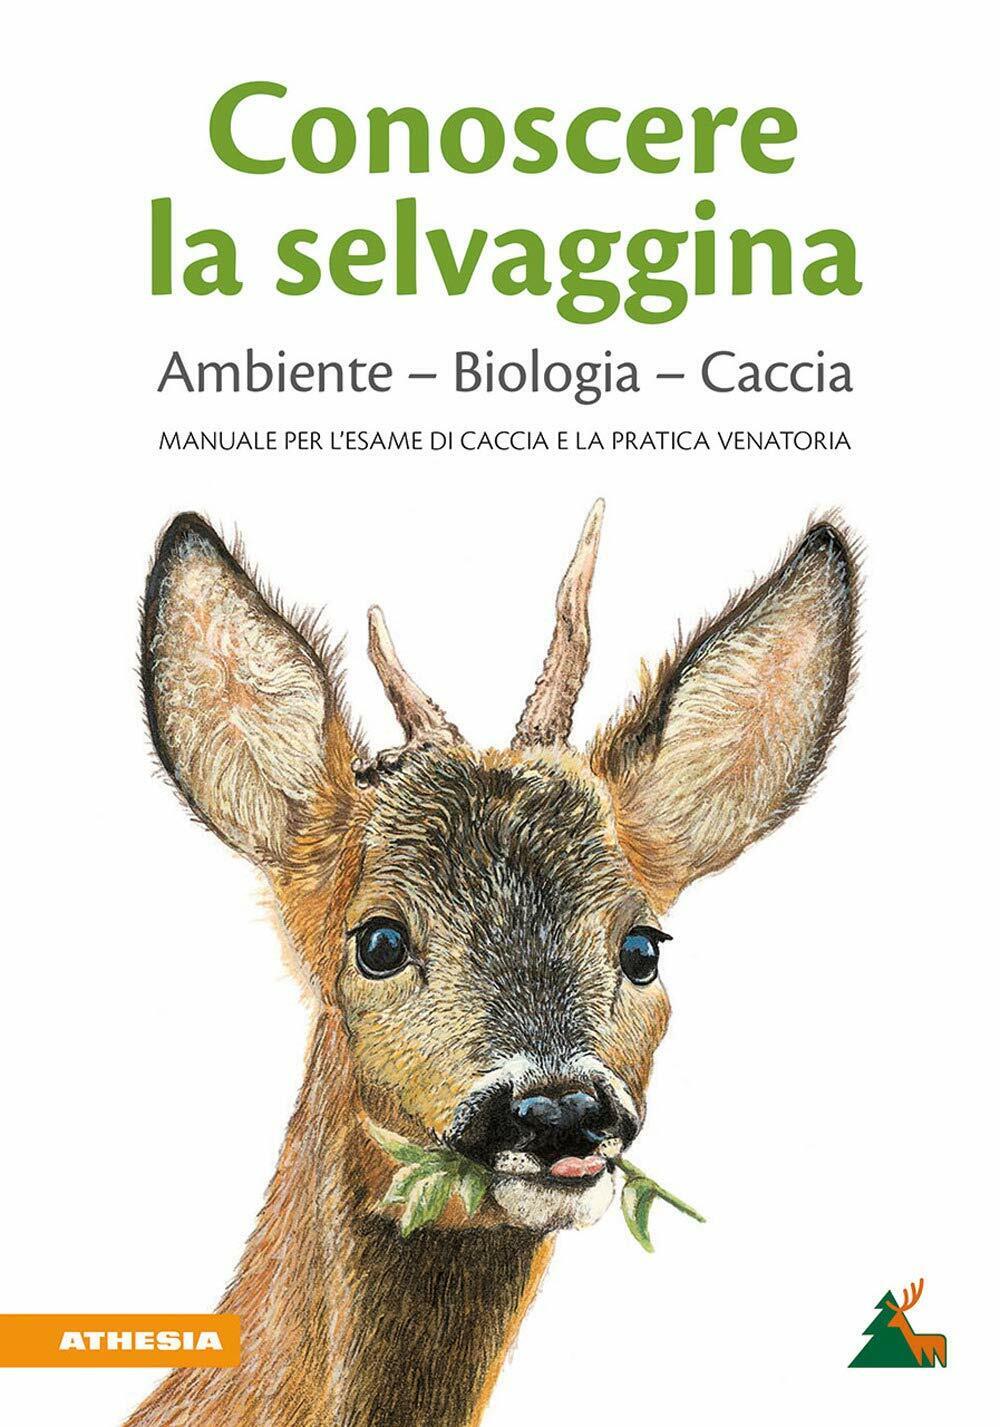 Conoscere la selvaggina - Associazione Cacciatori Alto Adige - Athesia, 2020 libro usato